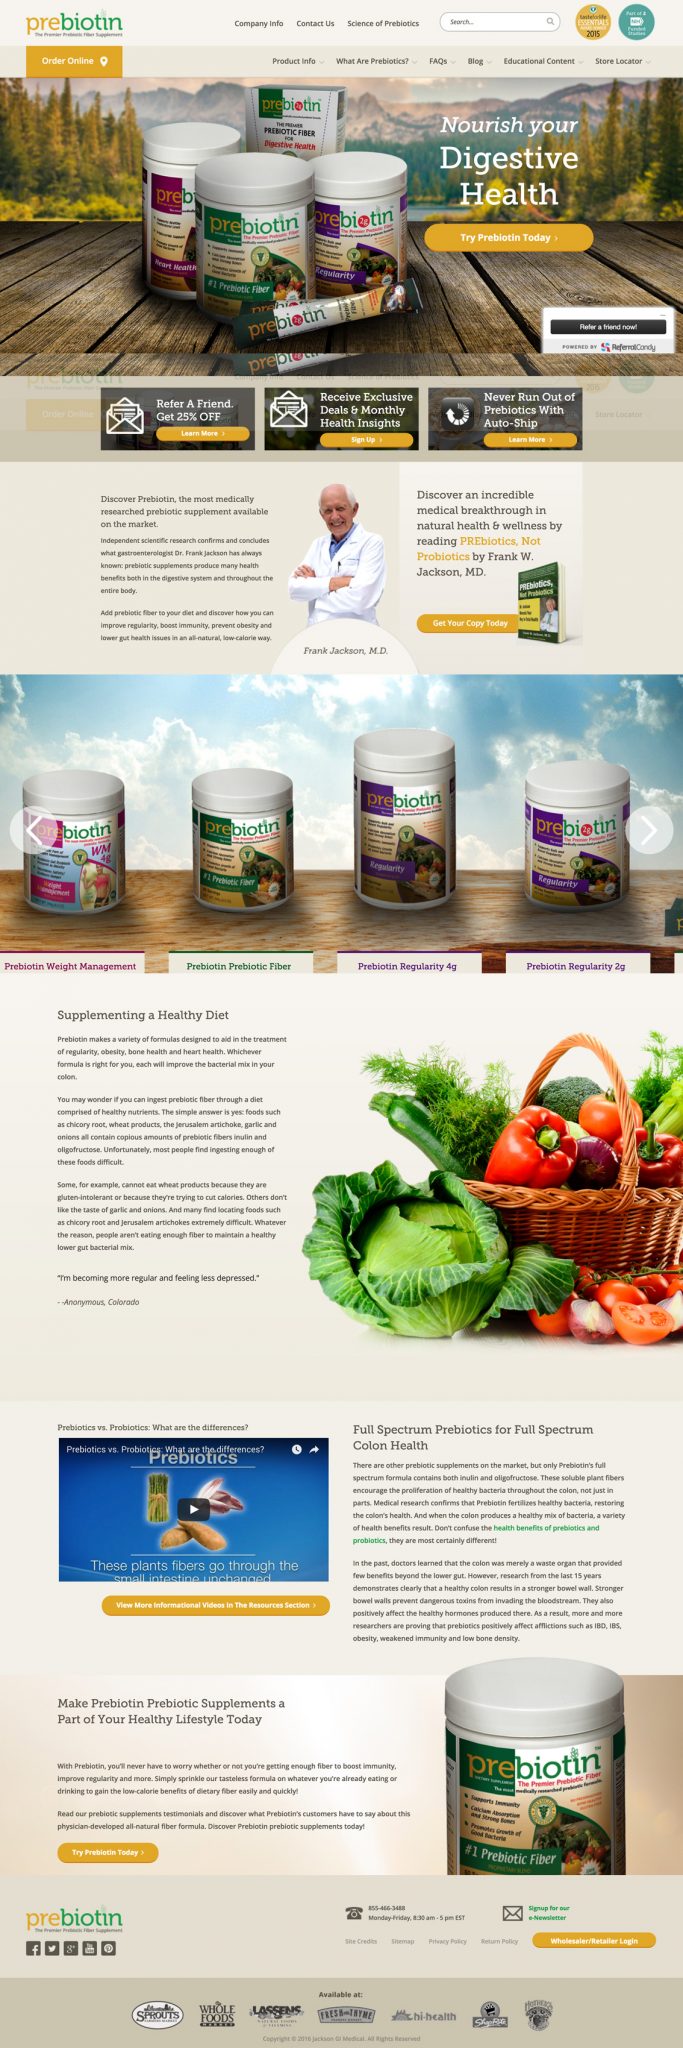 Supplements + Medicine - Medical Web Design